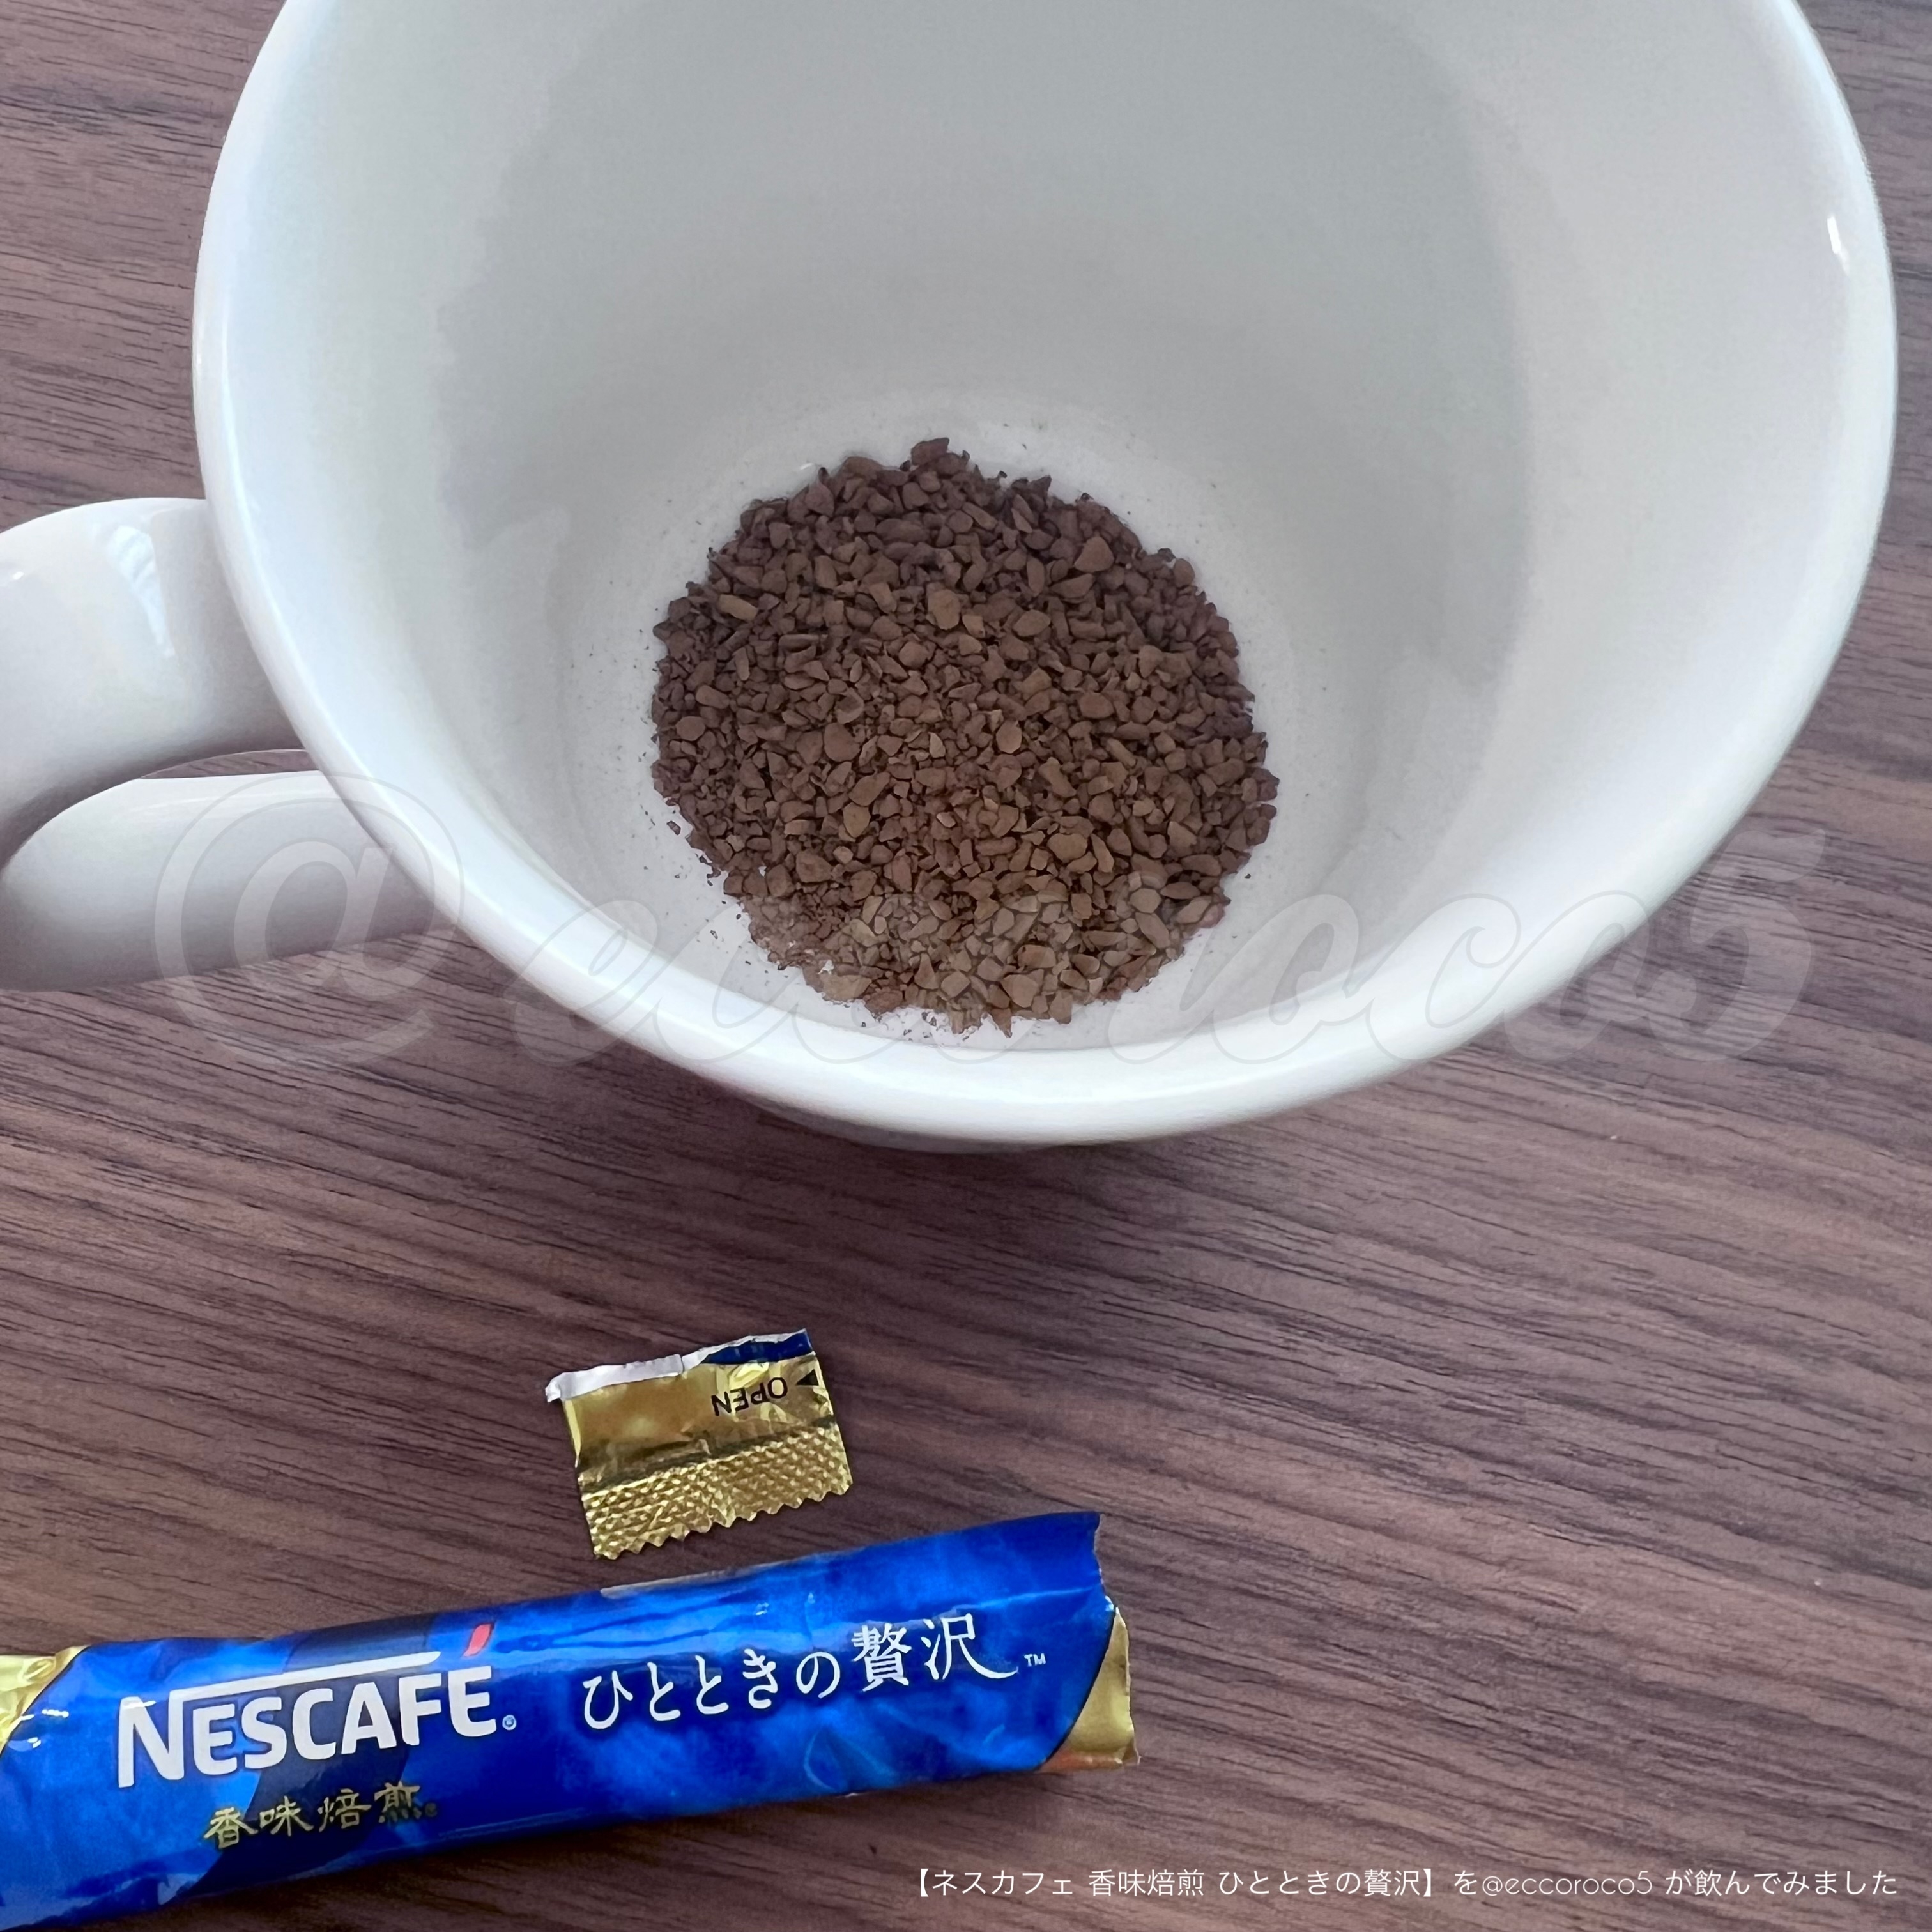 Nestle(ネスレ) ネスカフェ 香味焙煎 ひとときの贅沢 スティックコーヒーの良い点・メリットに関する@eccoroco5さんの口コミ画像3